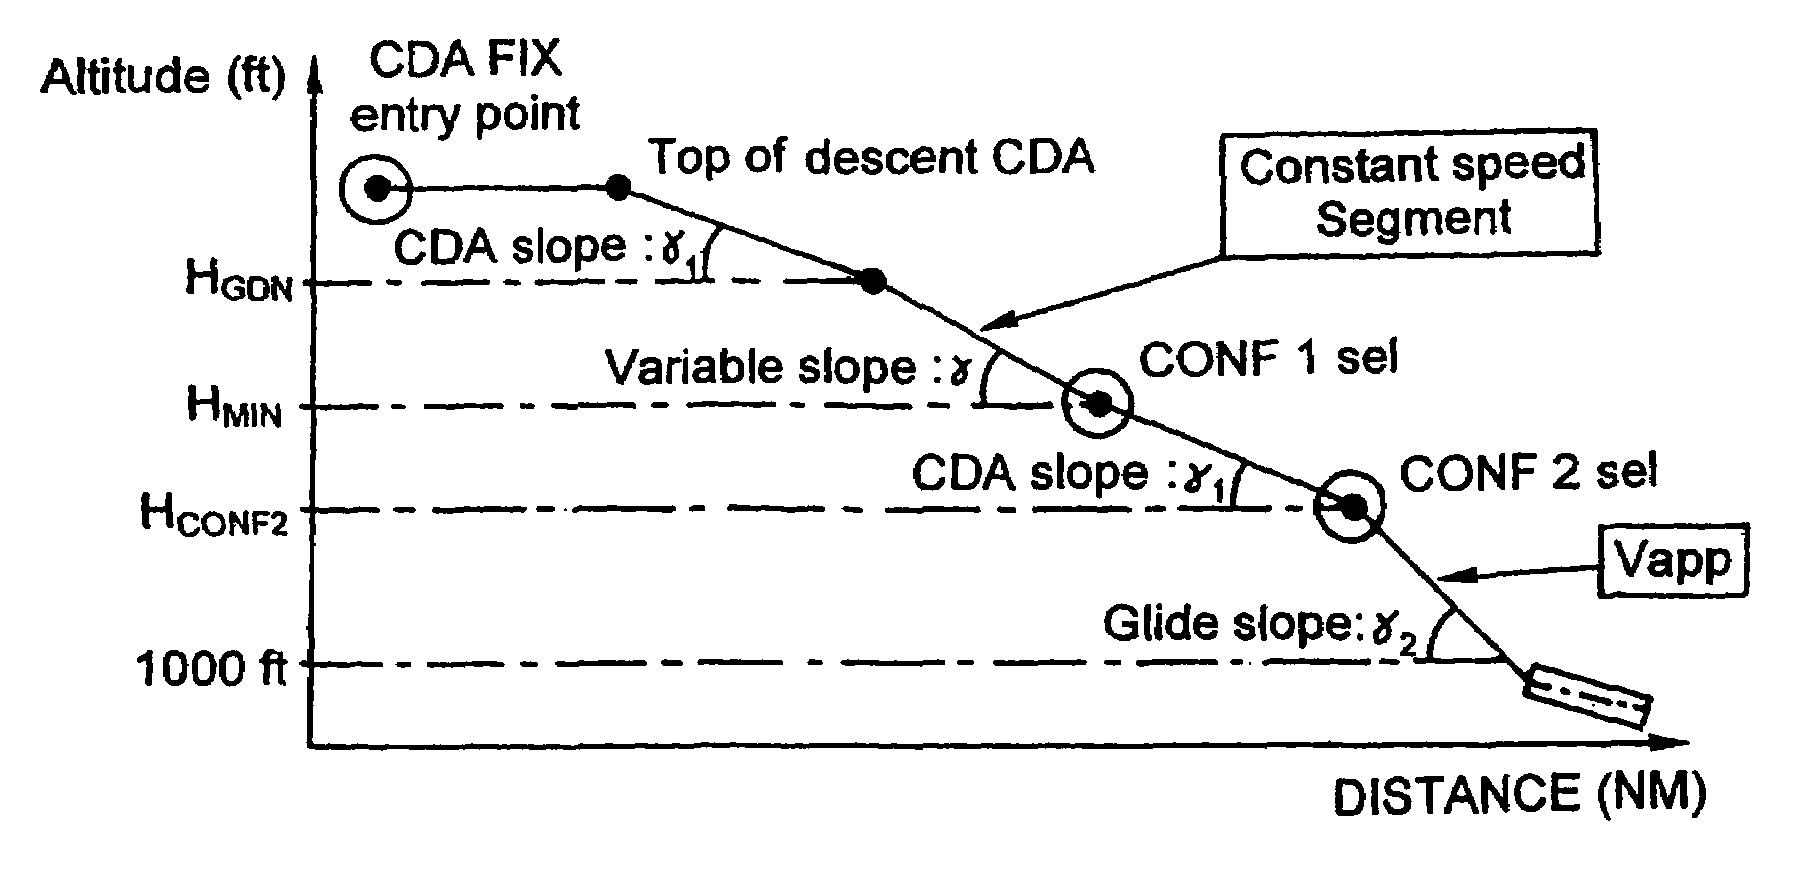 Flight management process for an aircraft